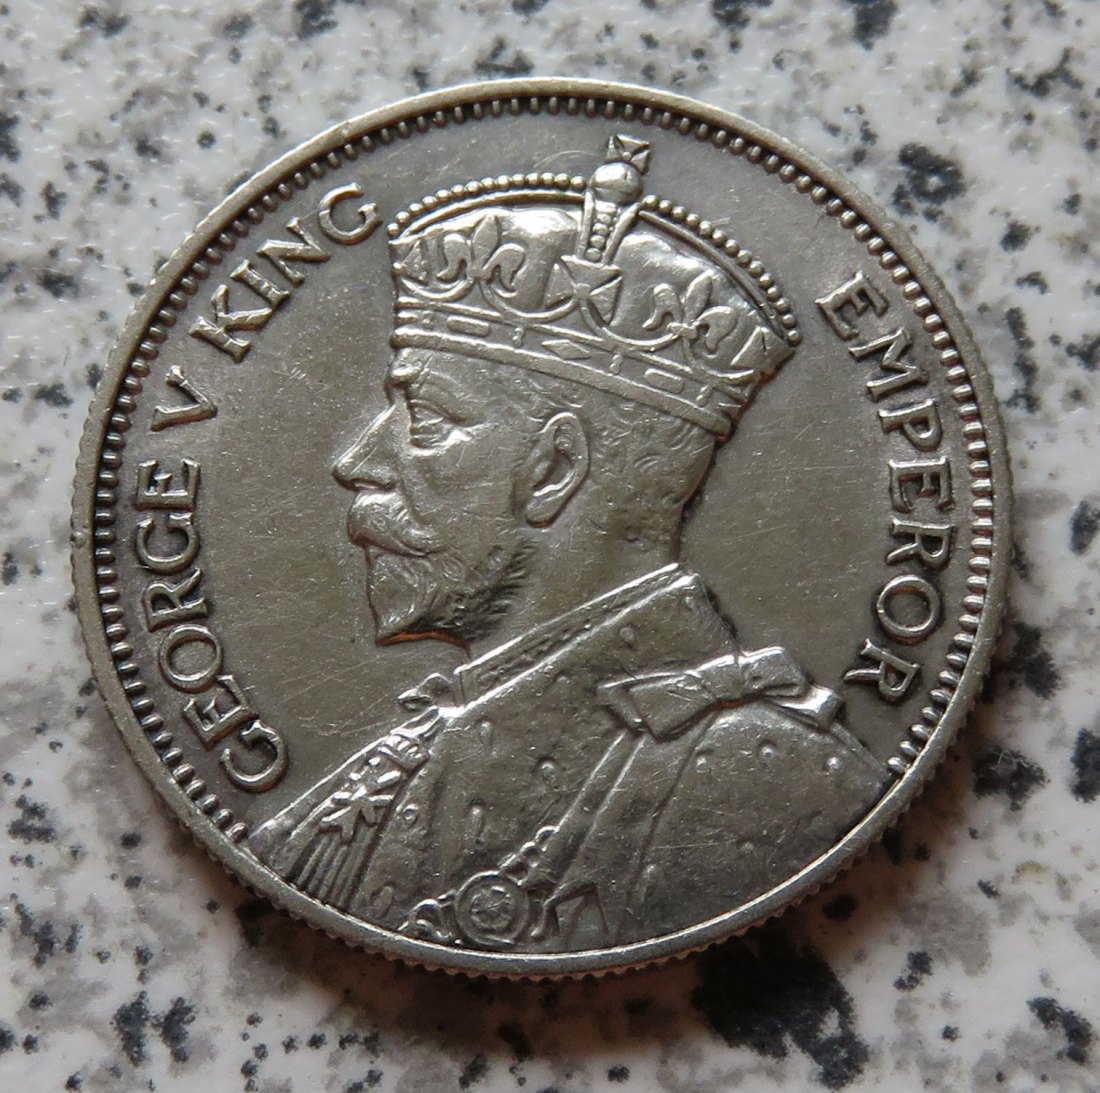  Fiji 1 Shilling 1936 (2)   